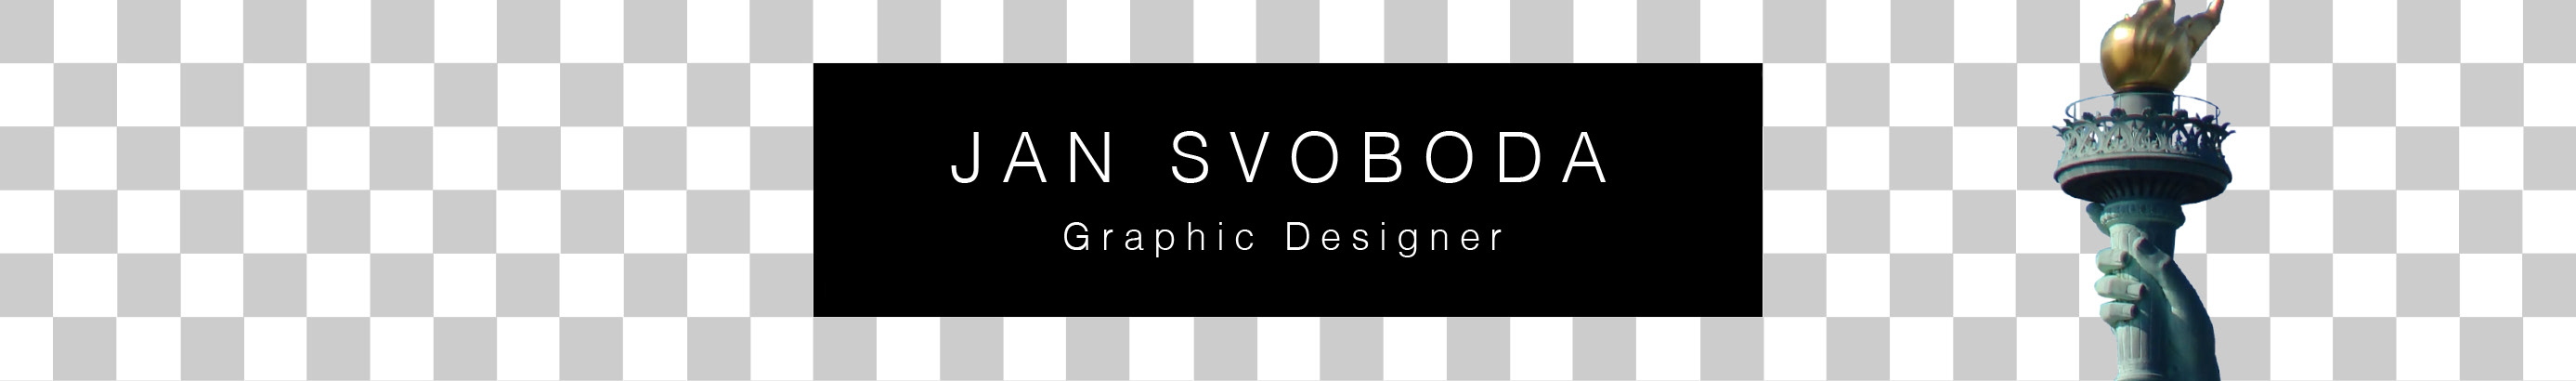 Banner profilu uživatele Jan Svoboda